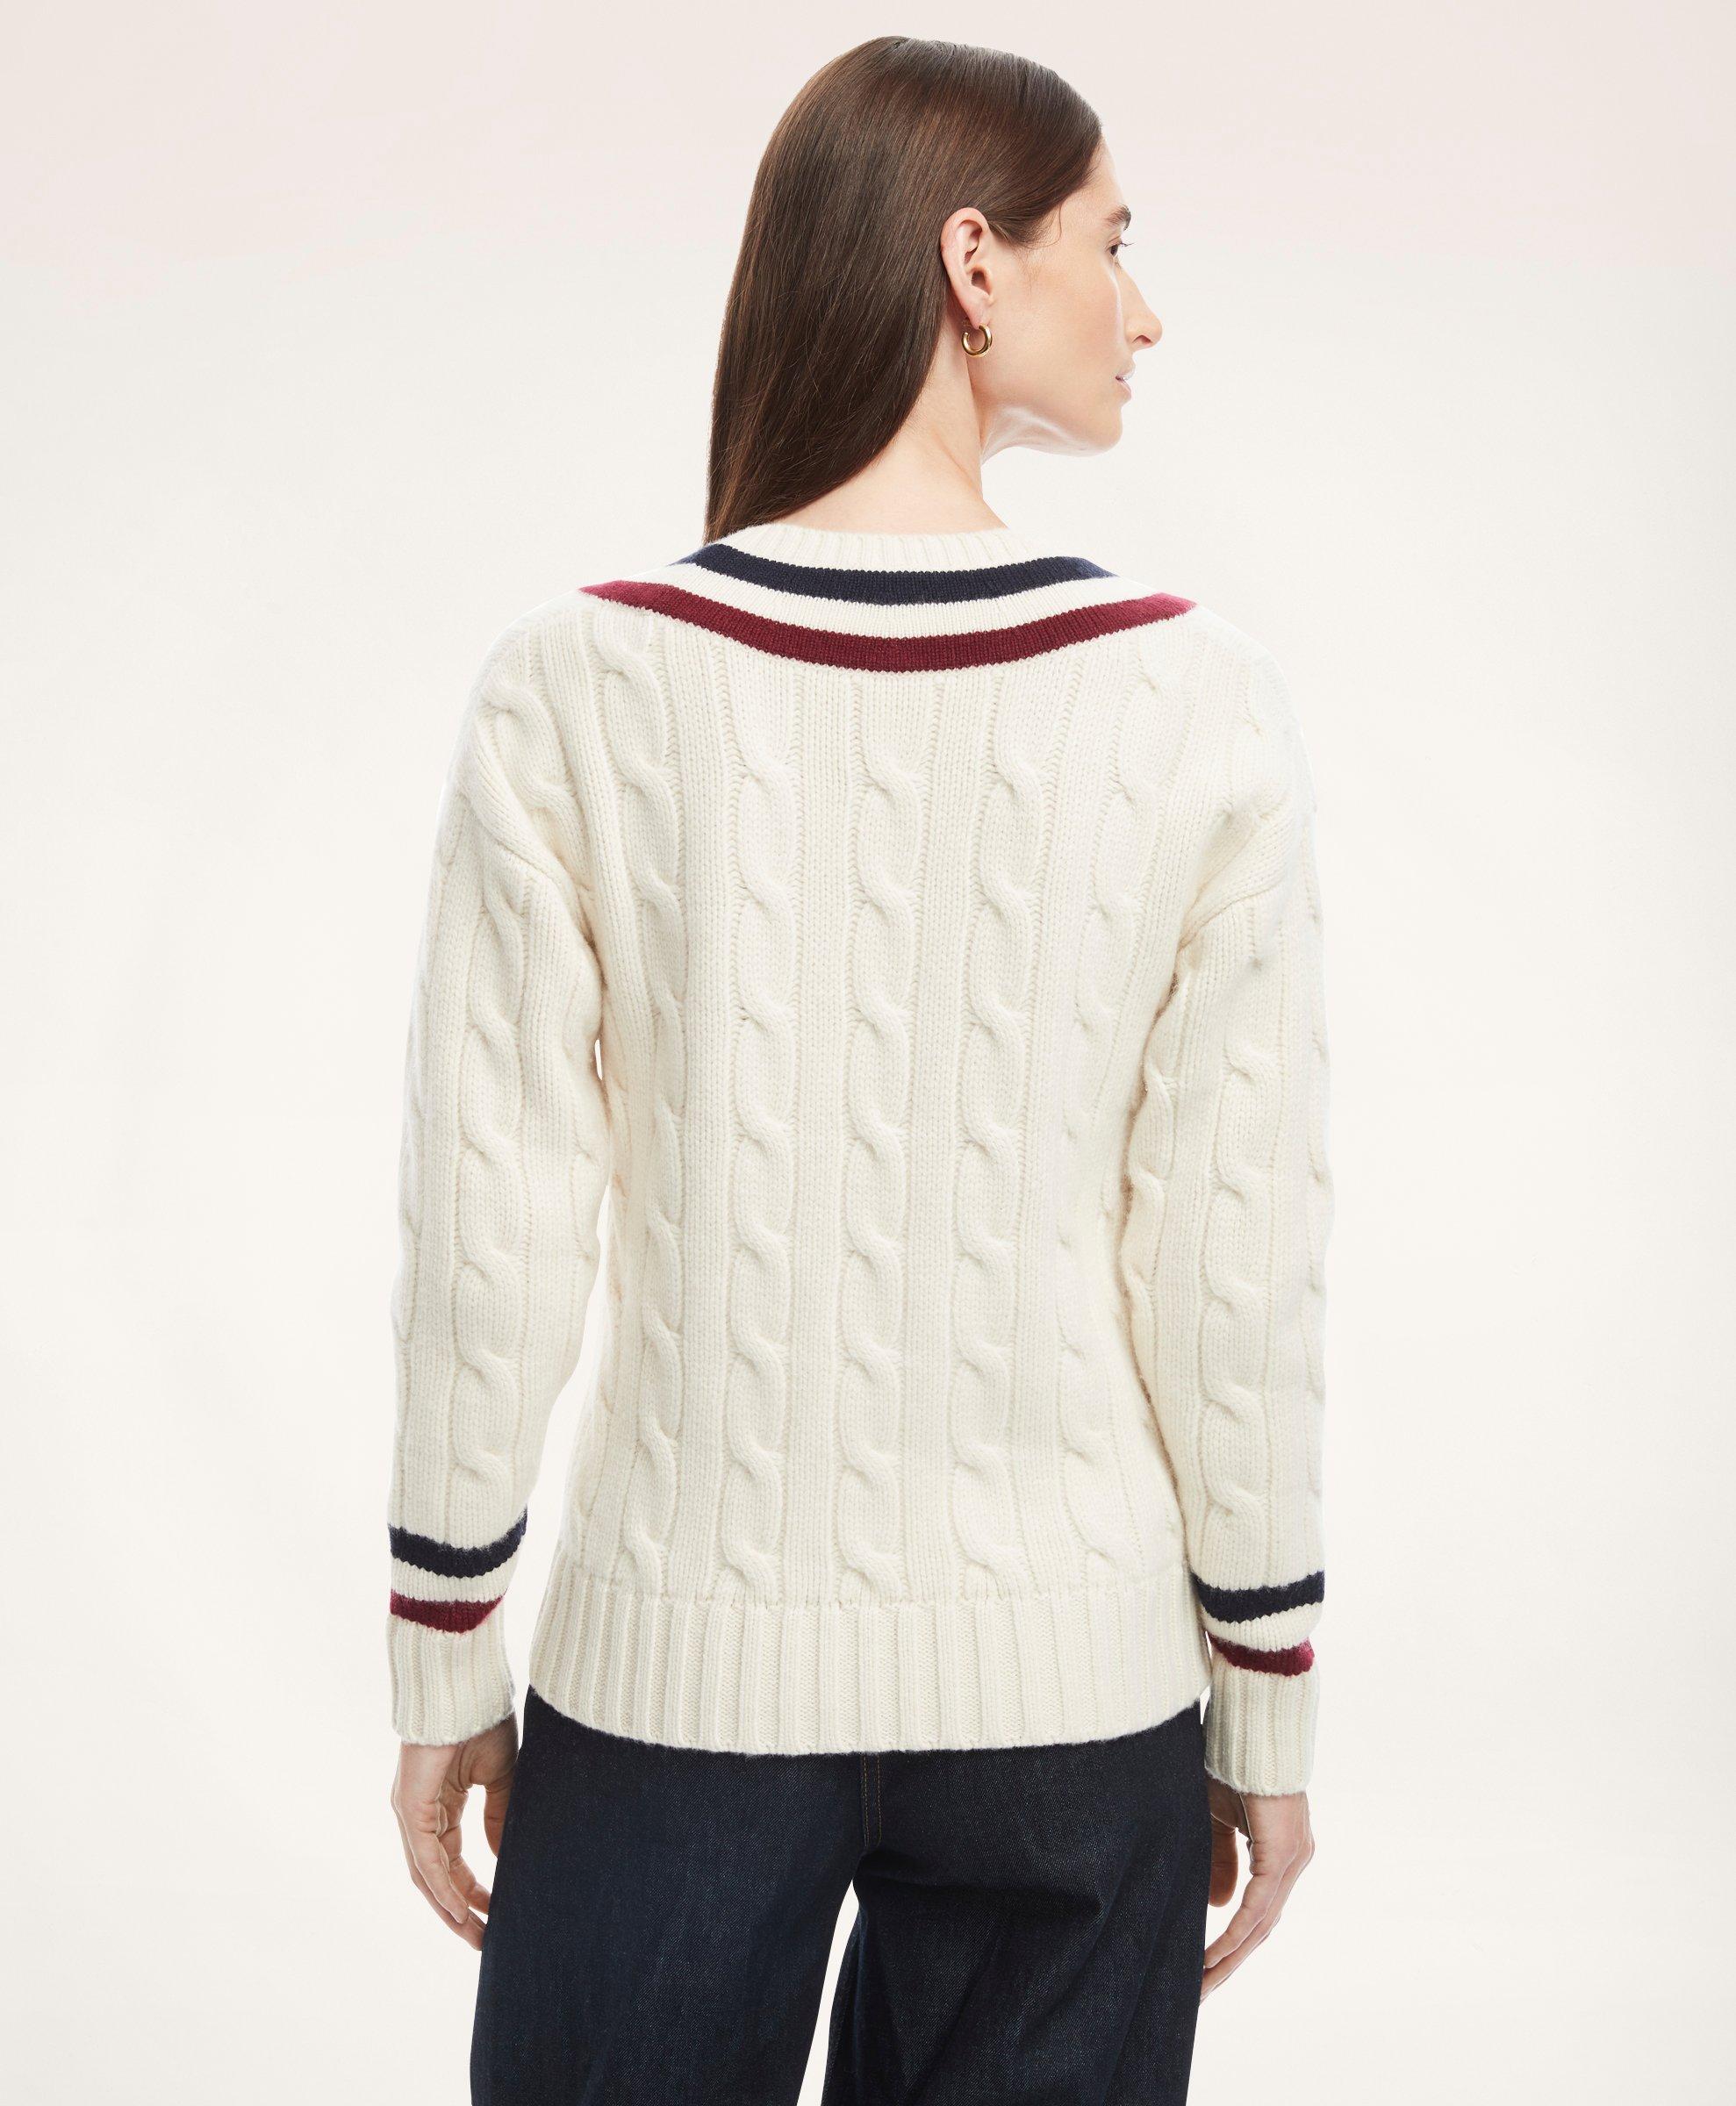 Merino Wool Cashmere Tennis Sweater, image 2